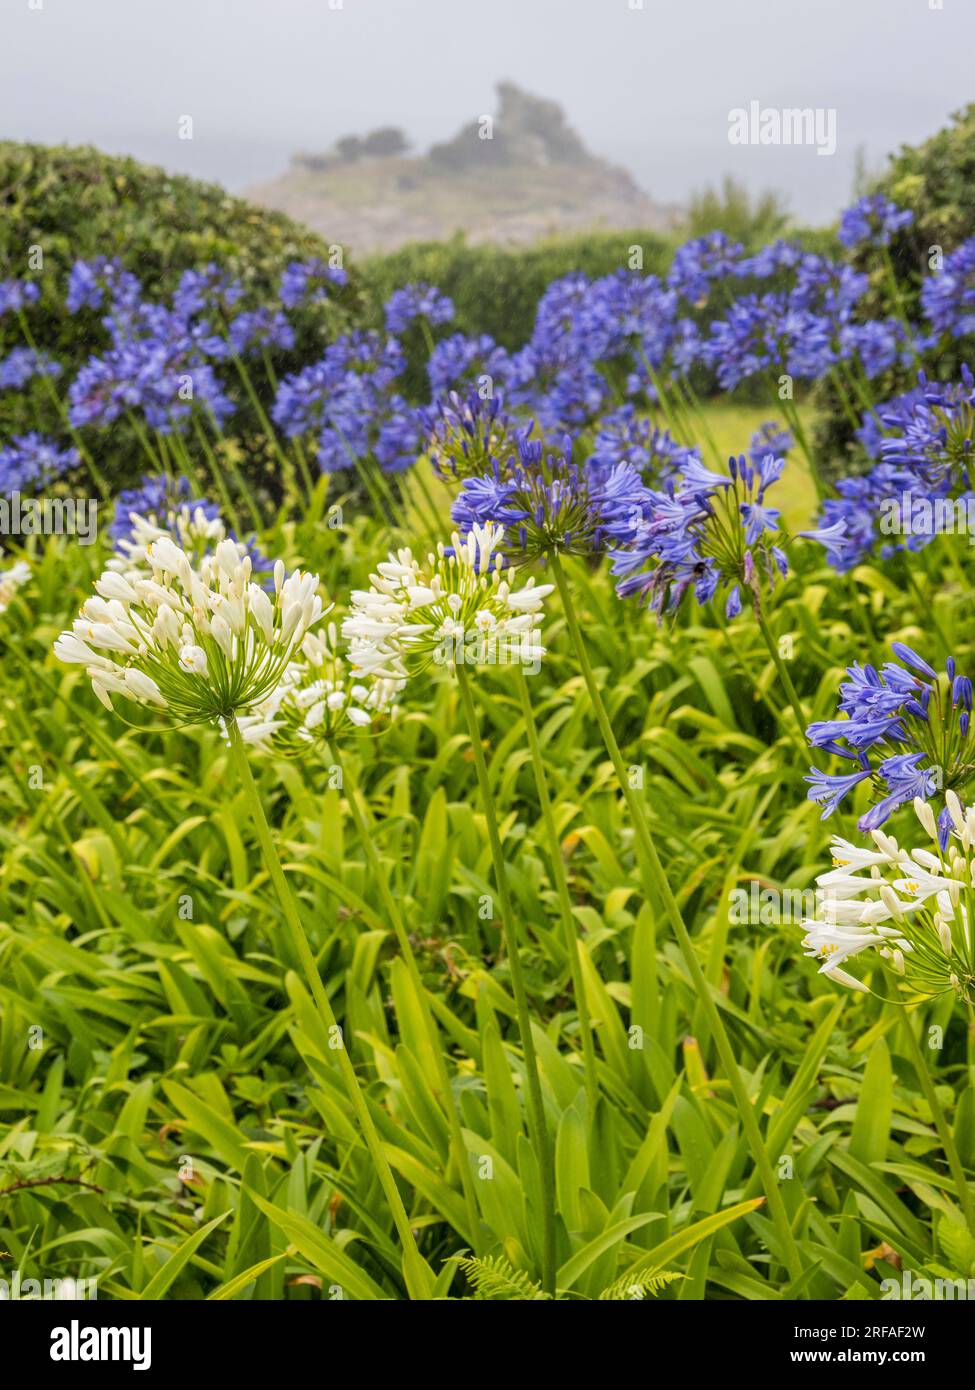 Wild Landscape, Agapanthus Flowers, Rainy Day, St Marys Island, Isles of Scilly, Cornwall, England, UK, GB. Stock Photo